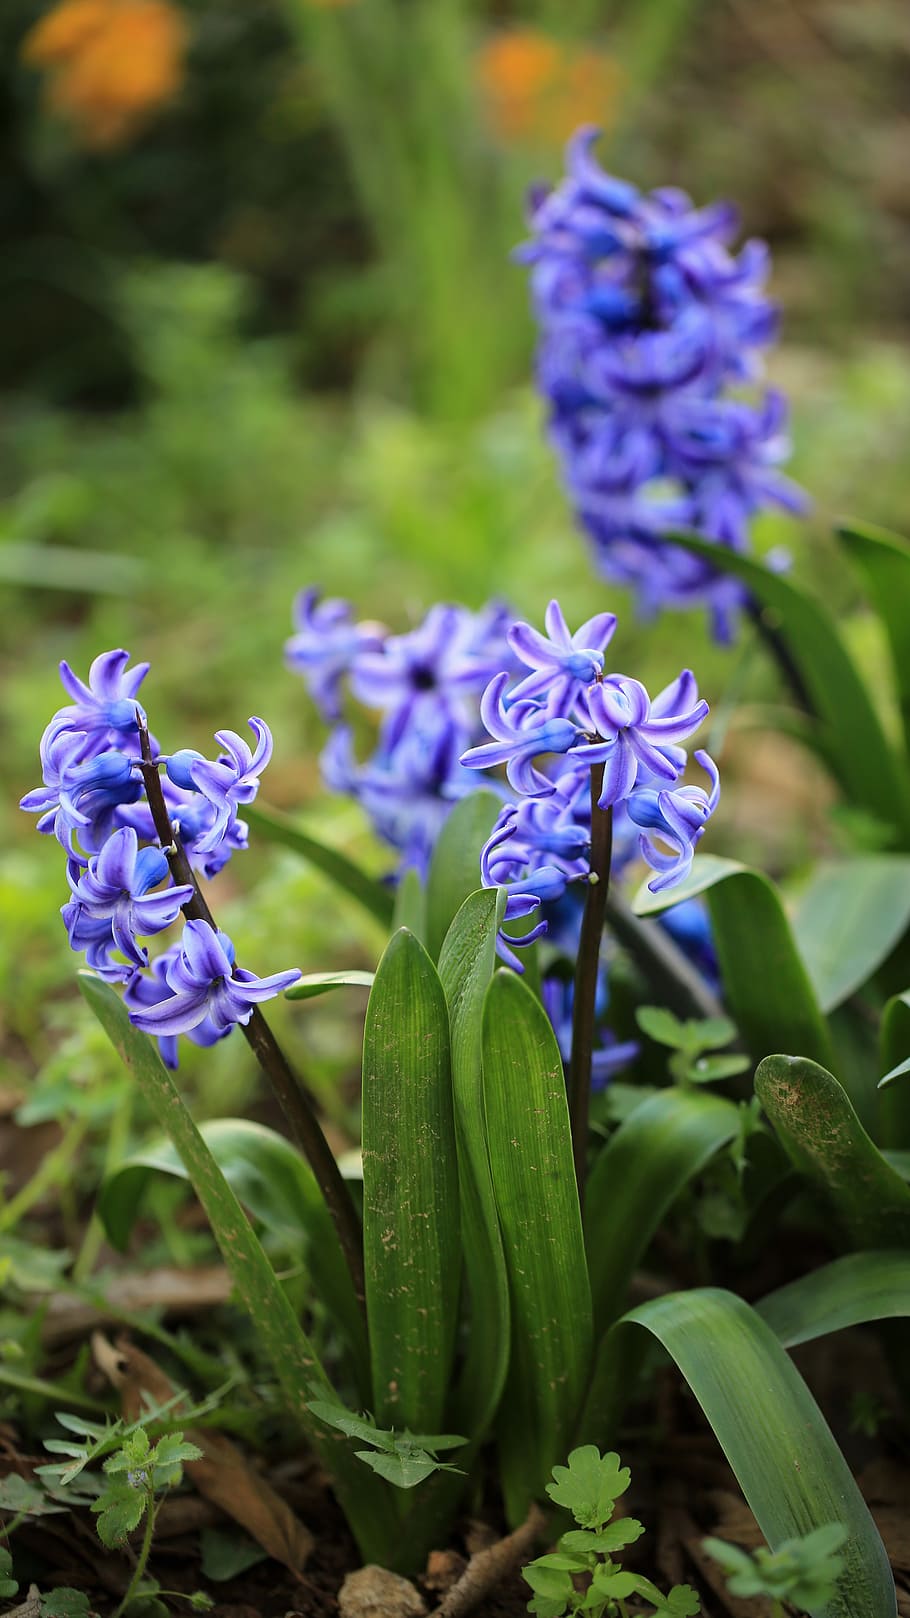 Azul, verde, varias flores de pétalos azules, planta floreciente, flor, planta, frescura, vulnerabilidad, belleza en la naturaleza, fragilidad